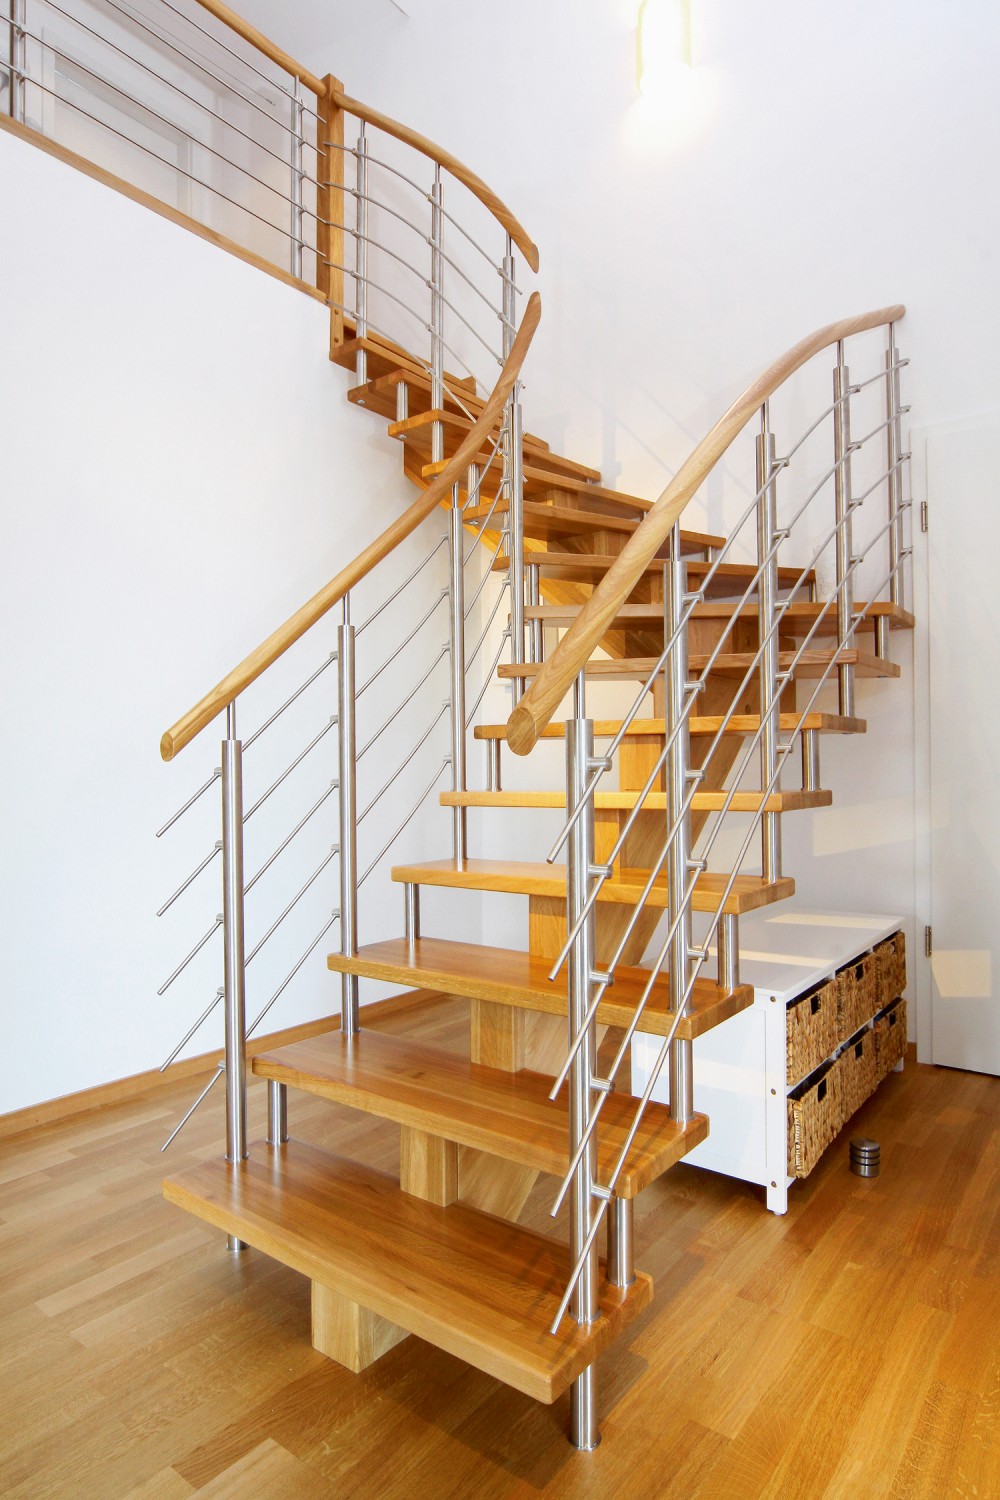 Rund ums Haus Praktisch und schön: Eine individuelle Treppe von Streger  - News, Bild 1